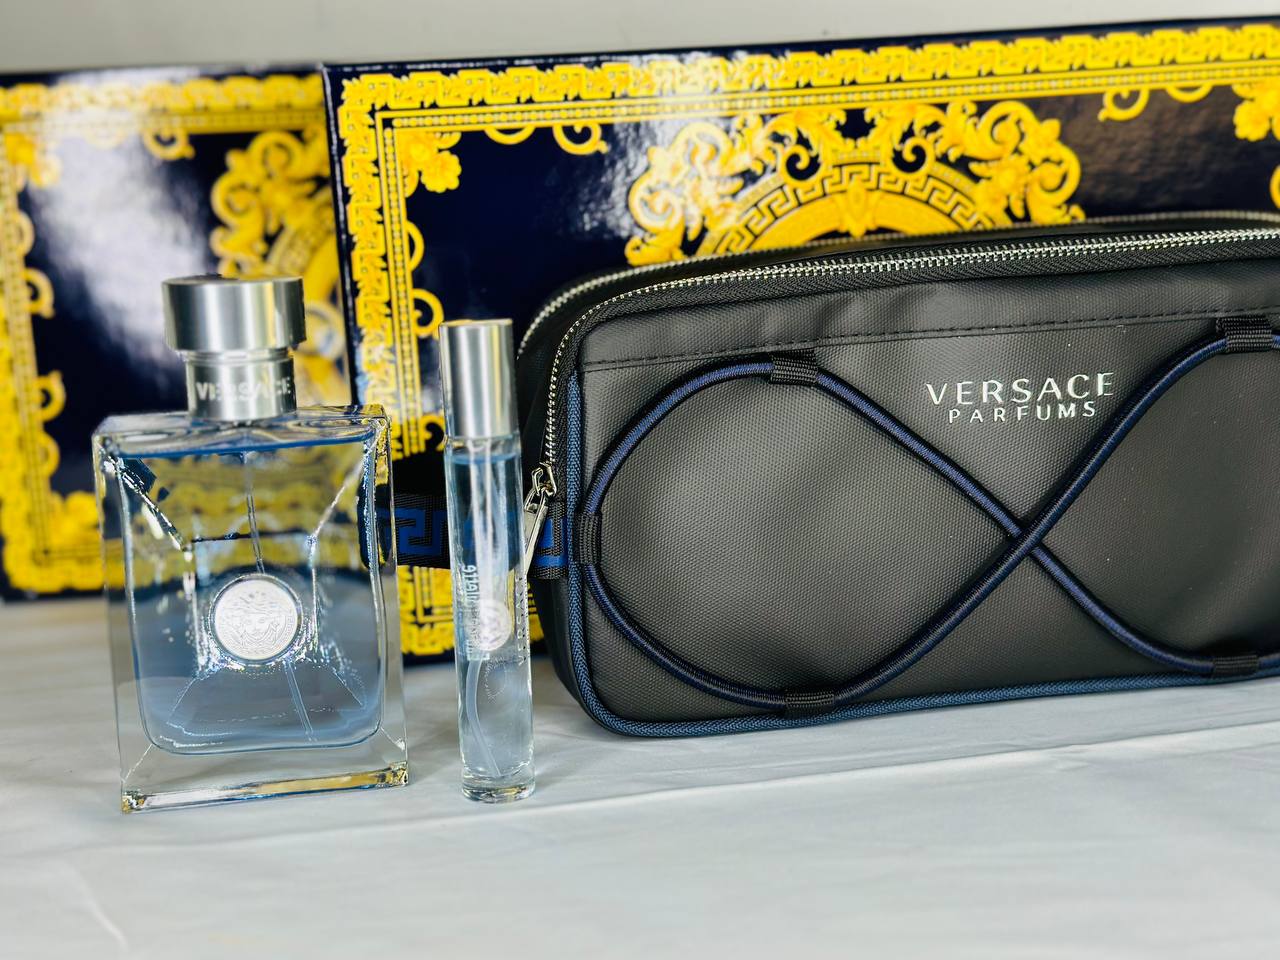 Versace set